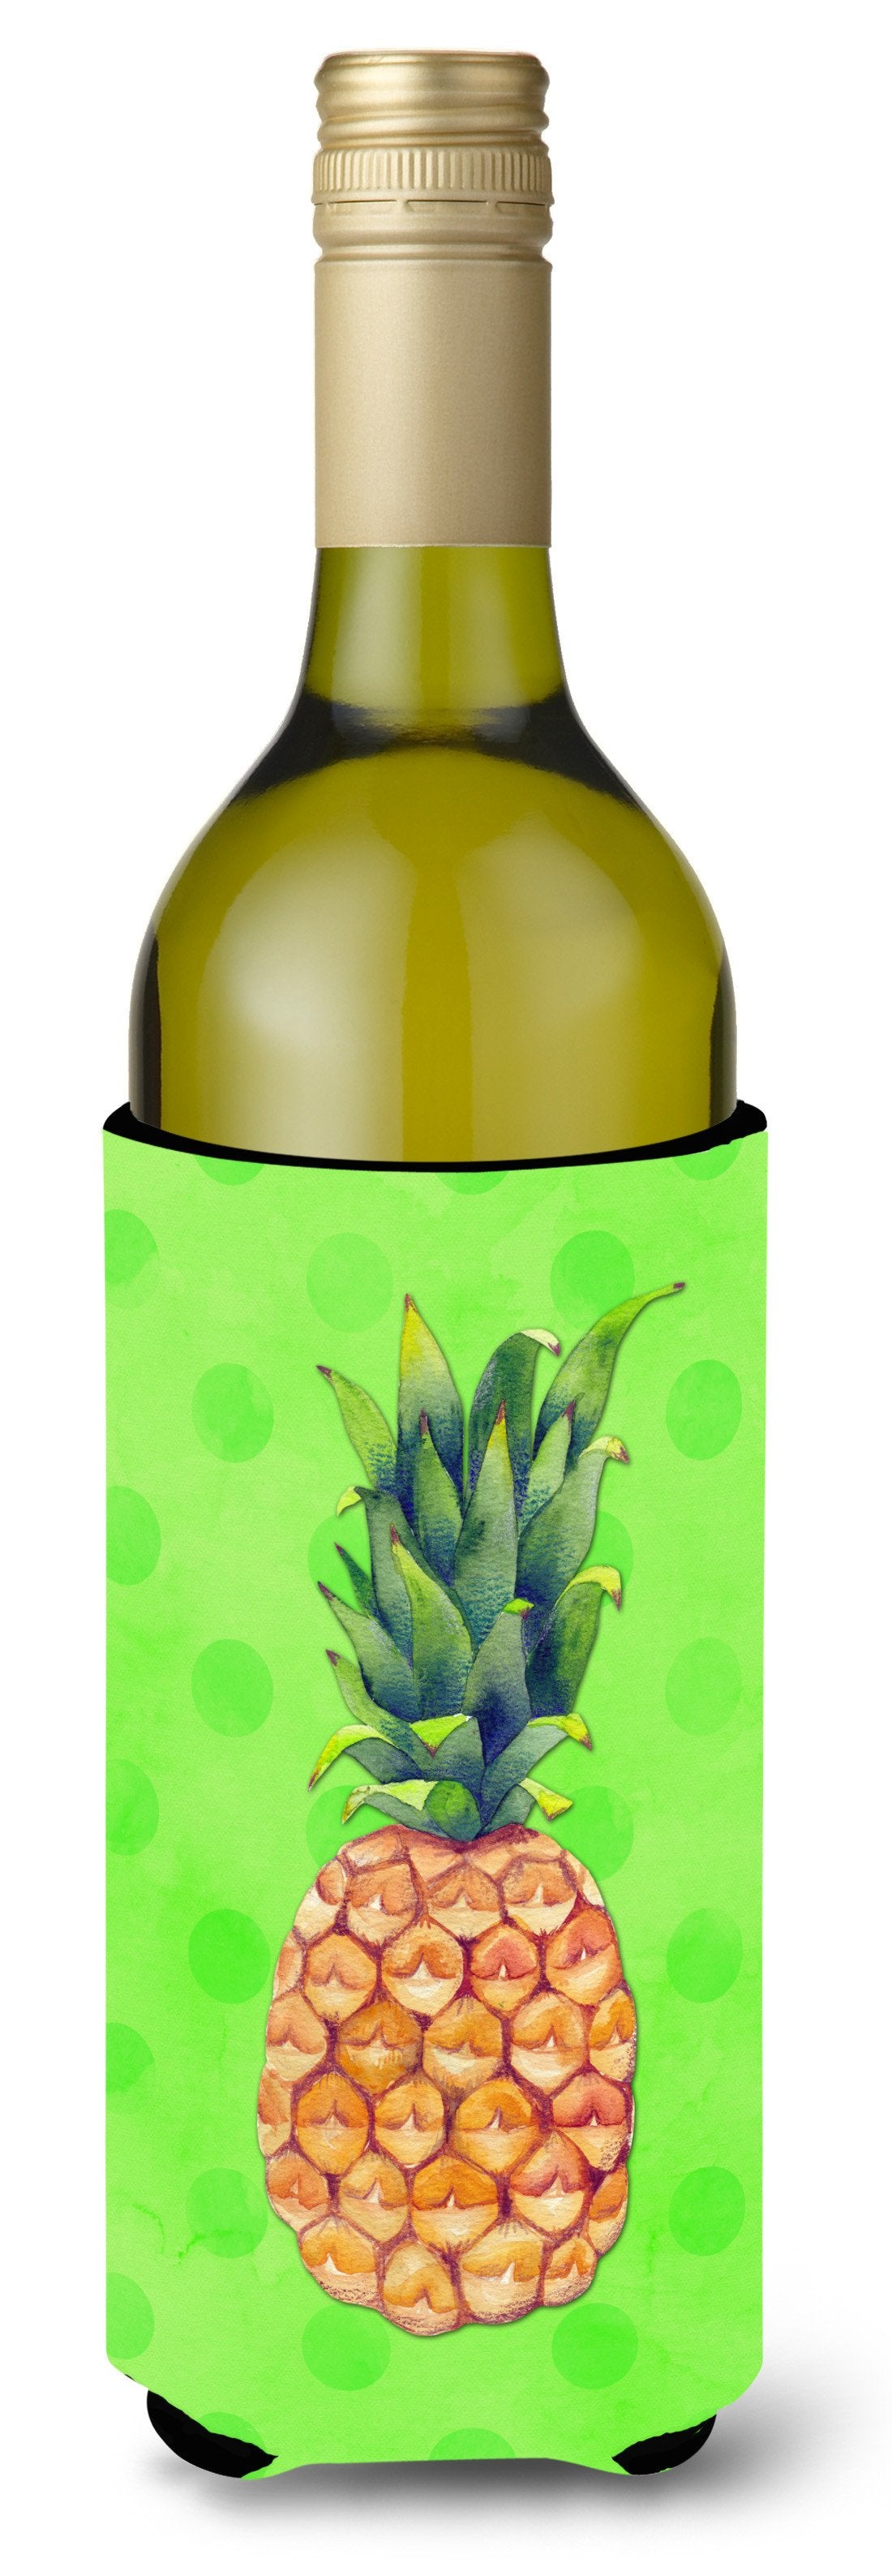 Pineapple Green Polkadot Wine Bottle Beverge Insulator Hugger BB8190LITERK by Caroline's Treasures